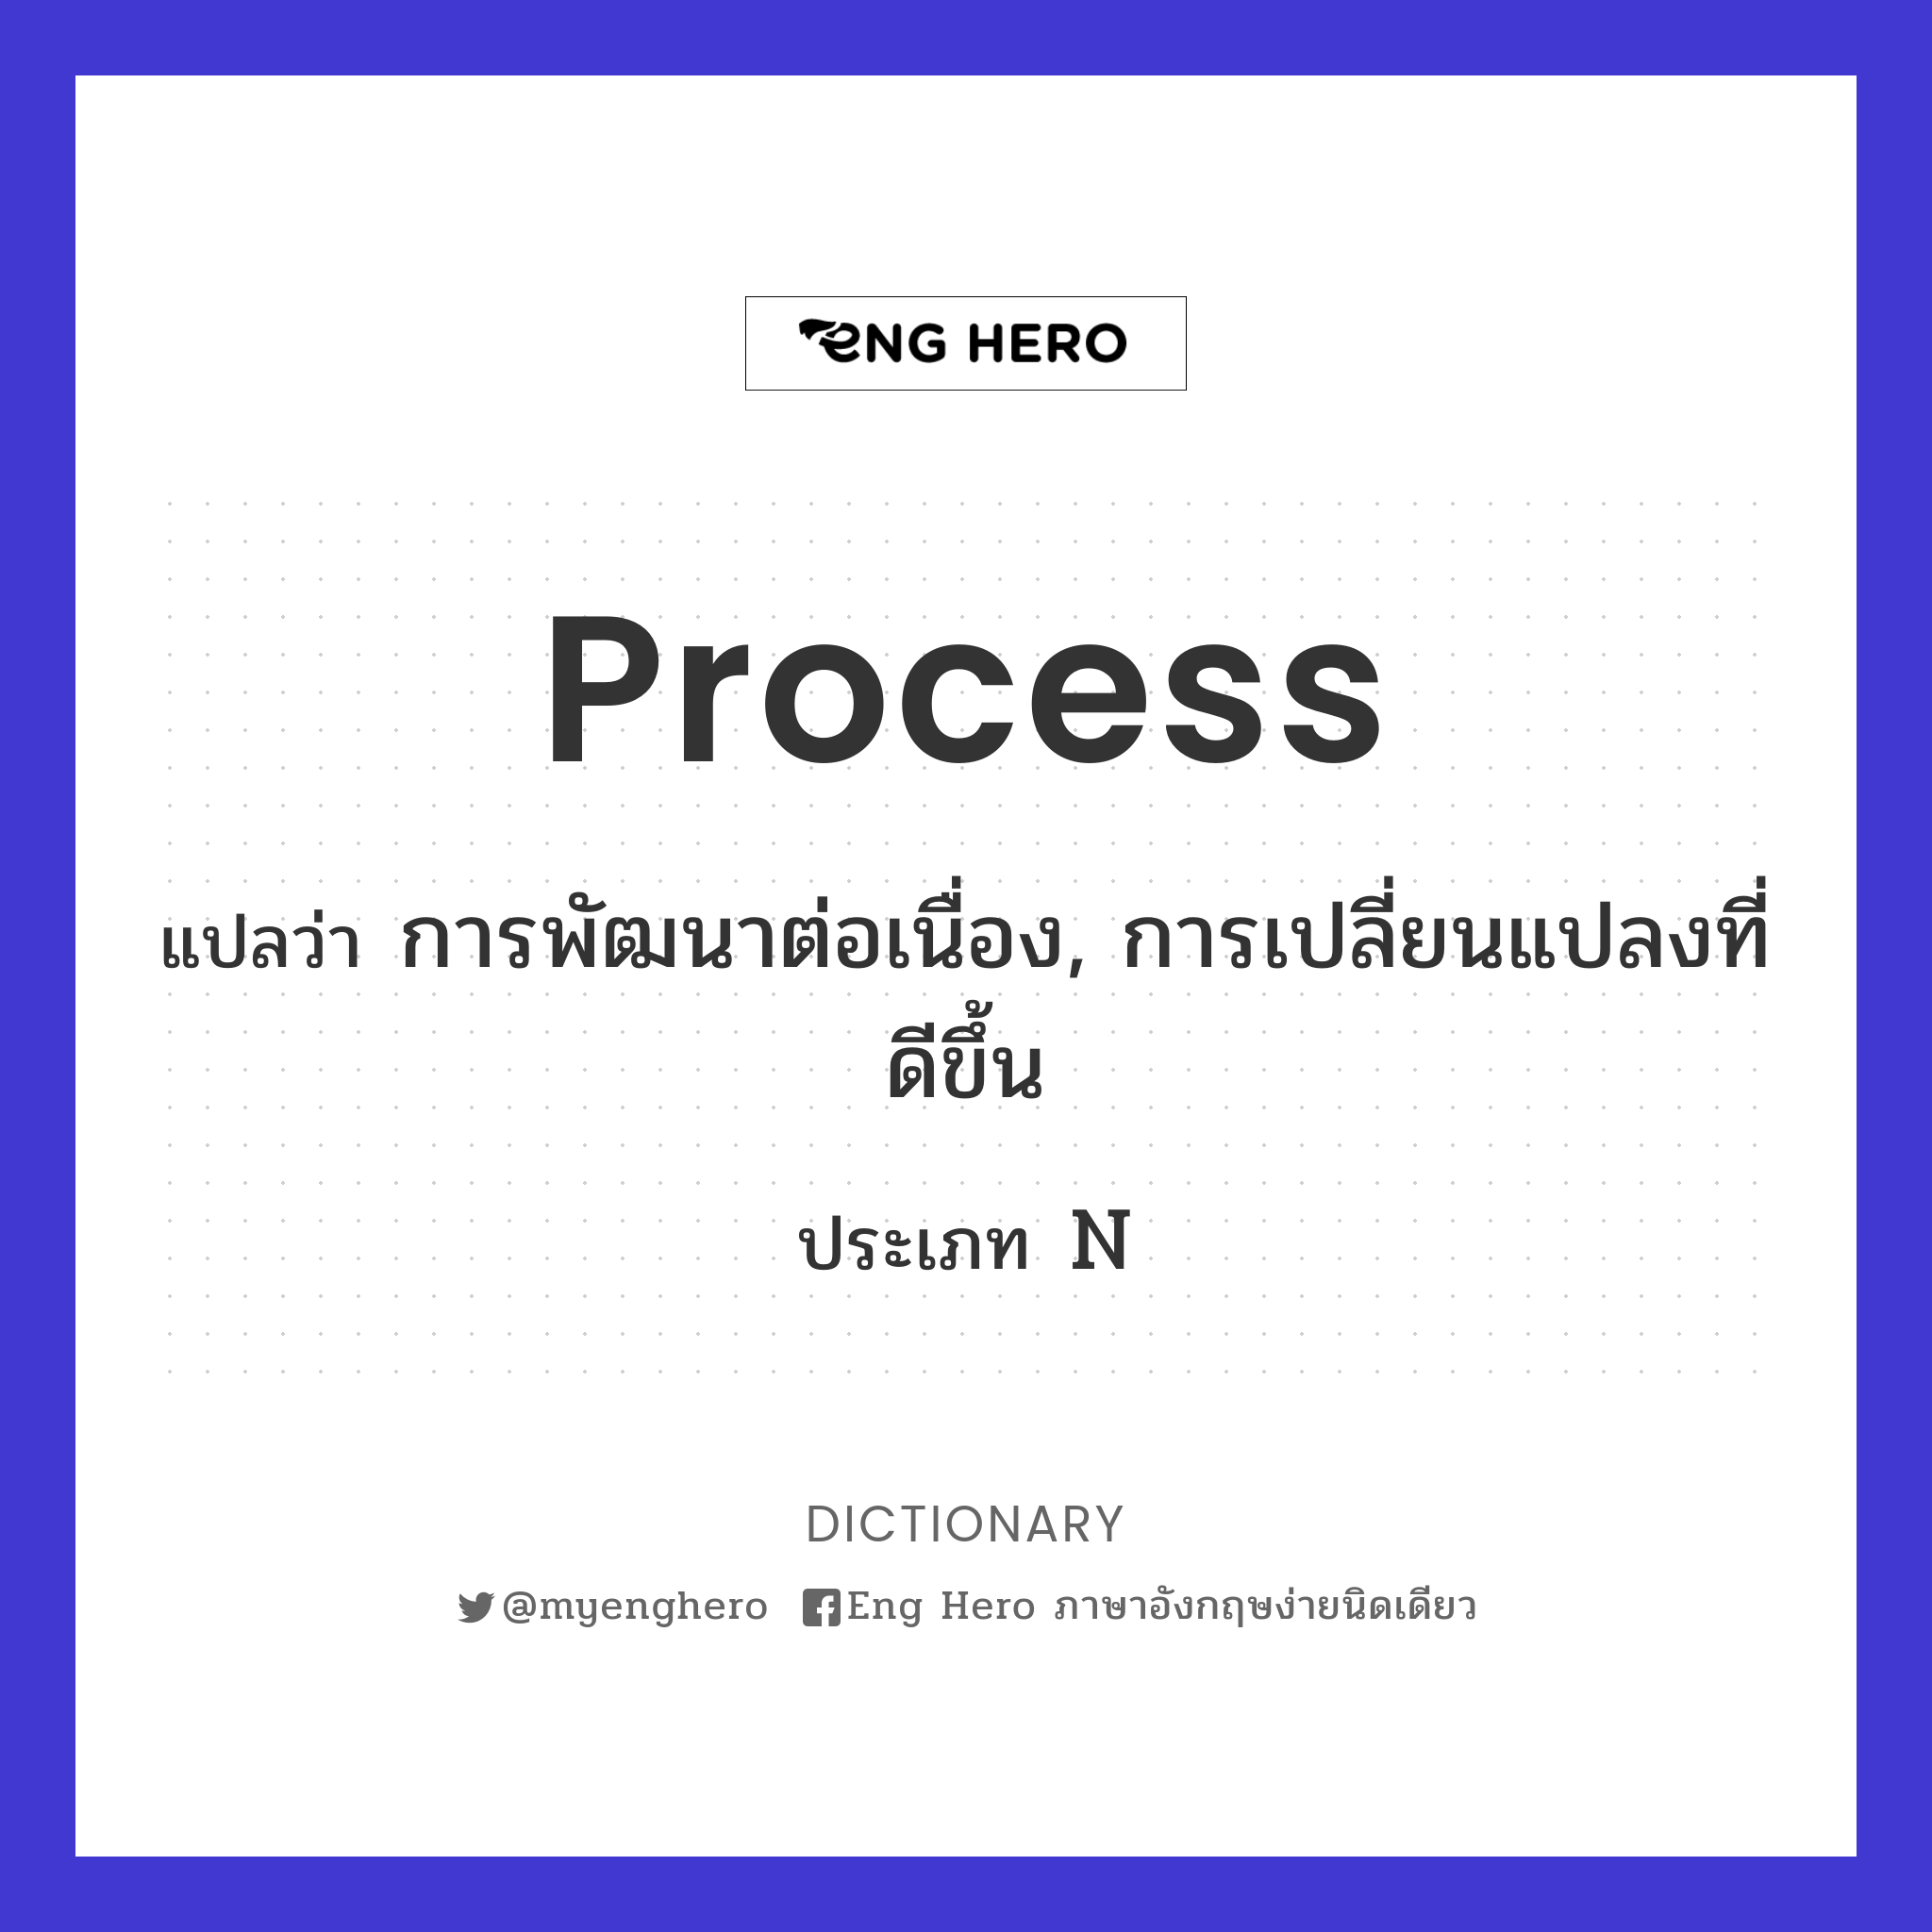 process